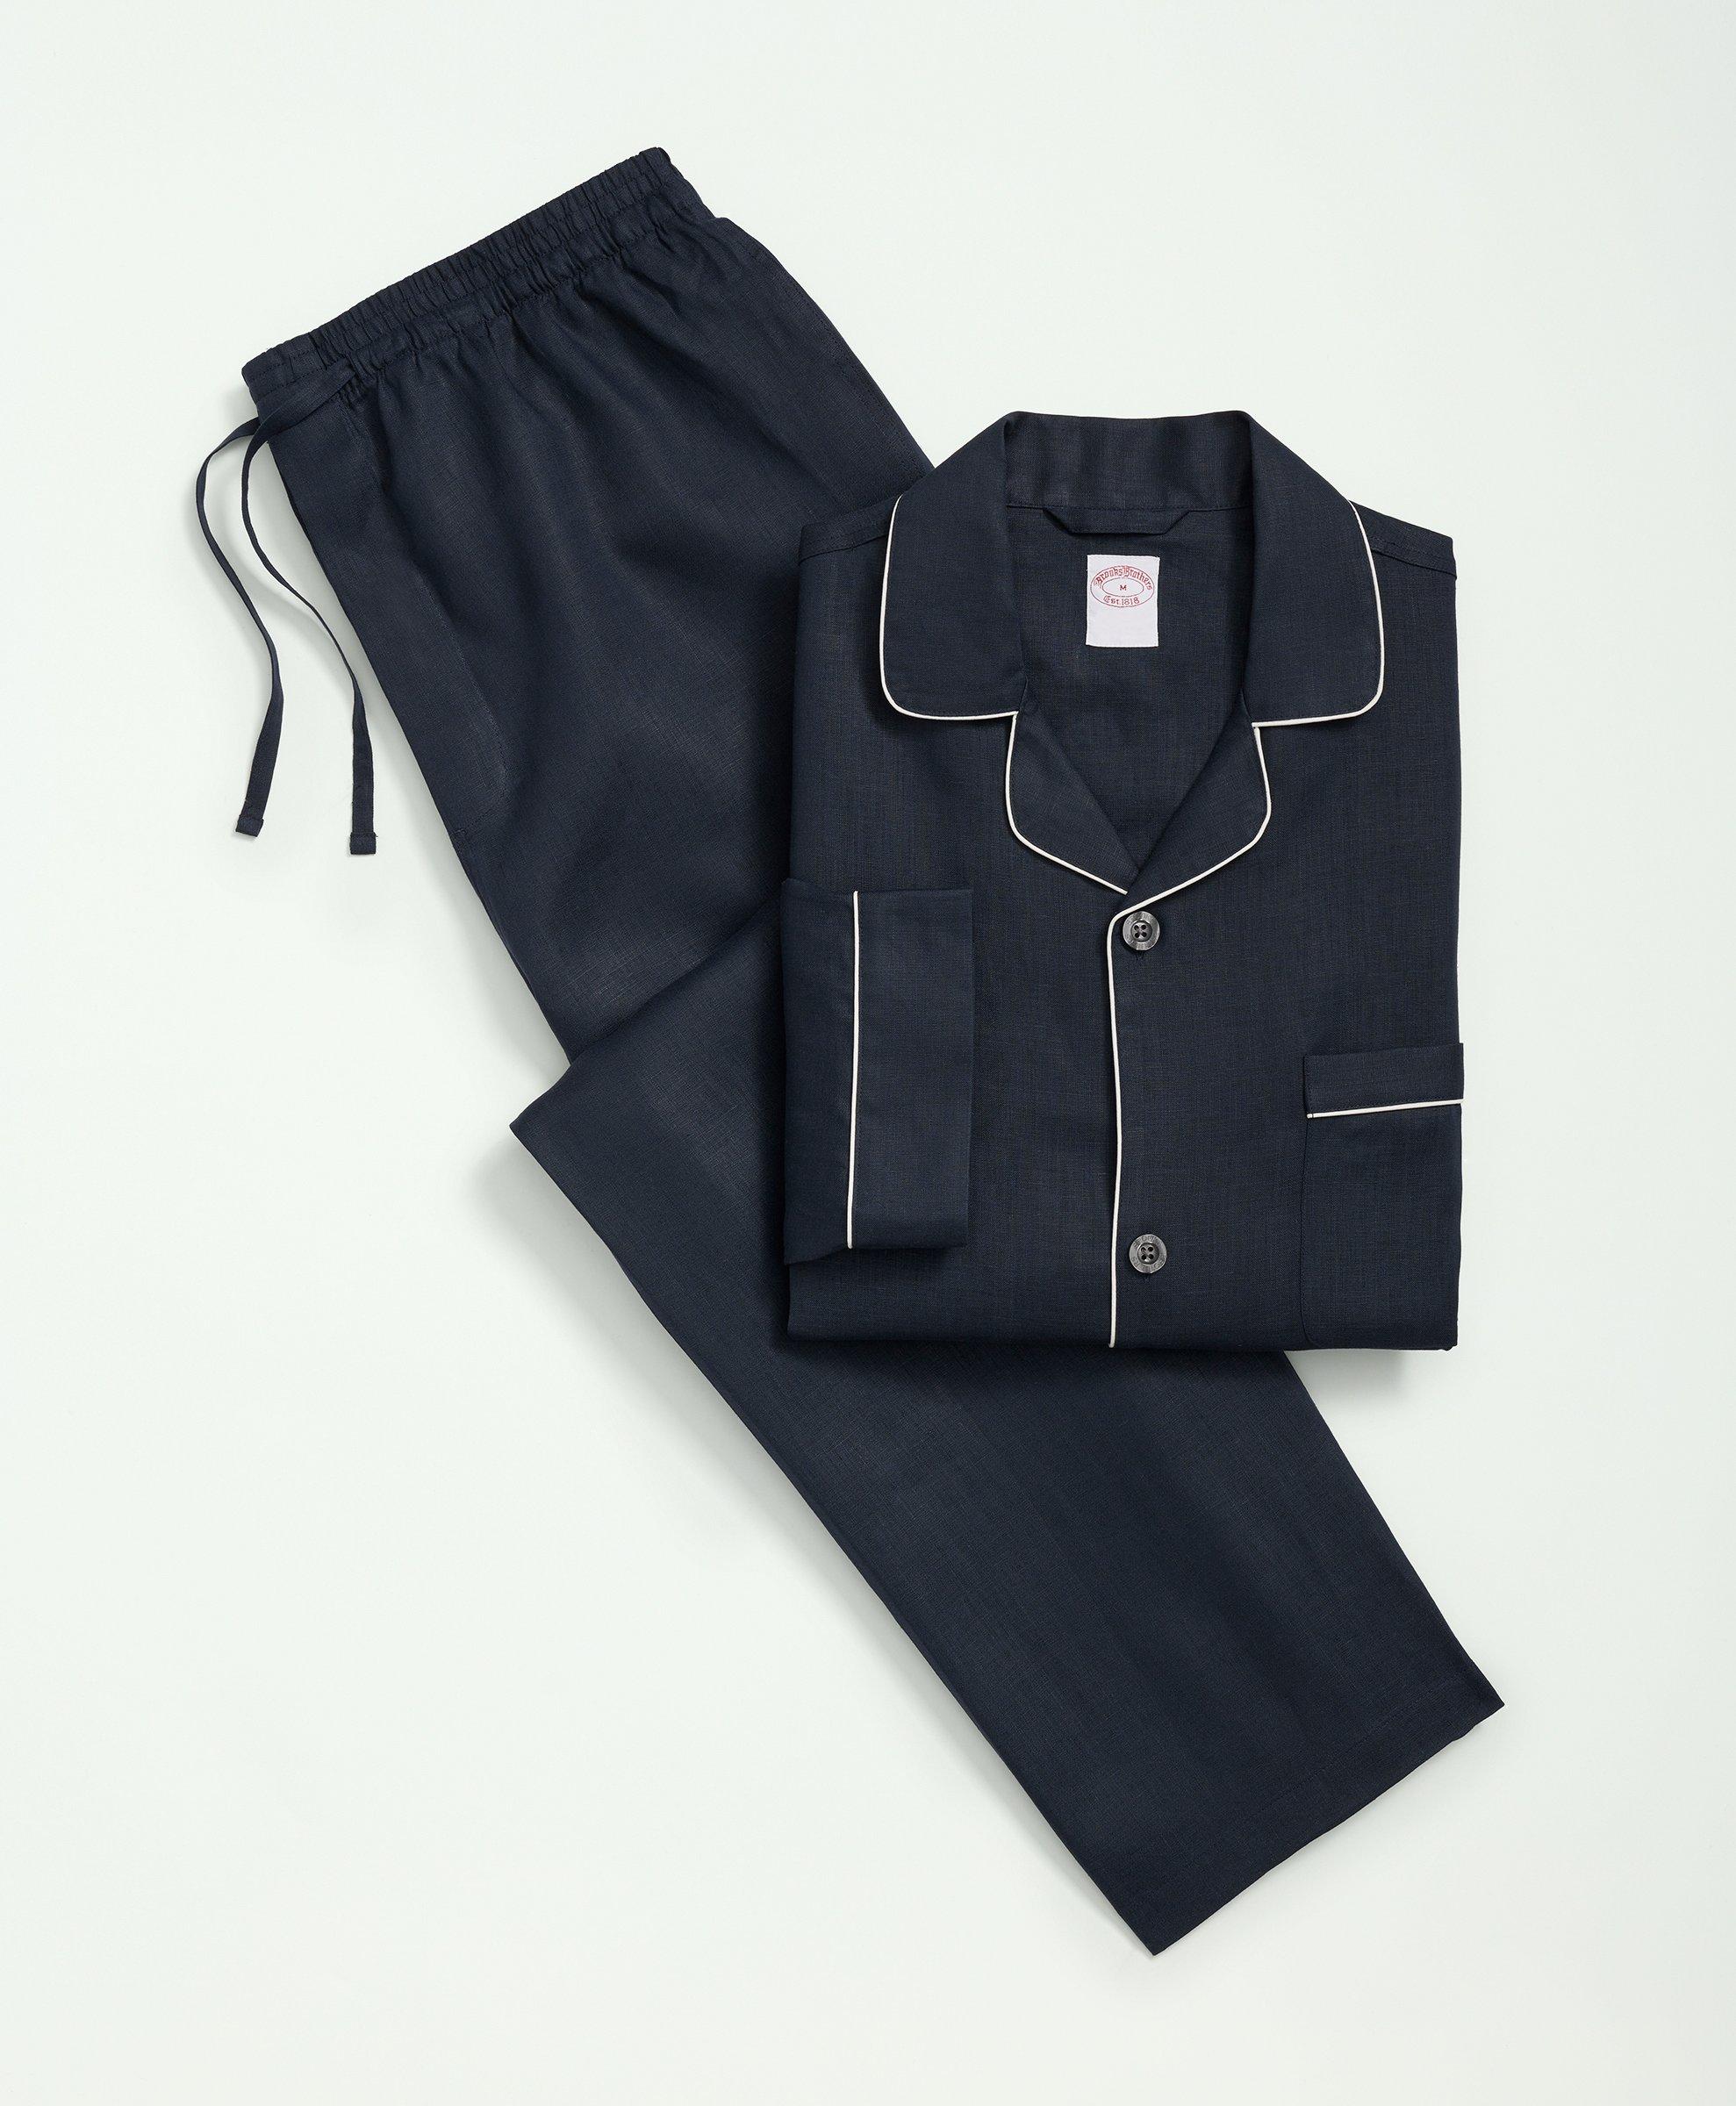 Men's 100% Cotton Pajamas, Loungewear & Robes